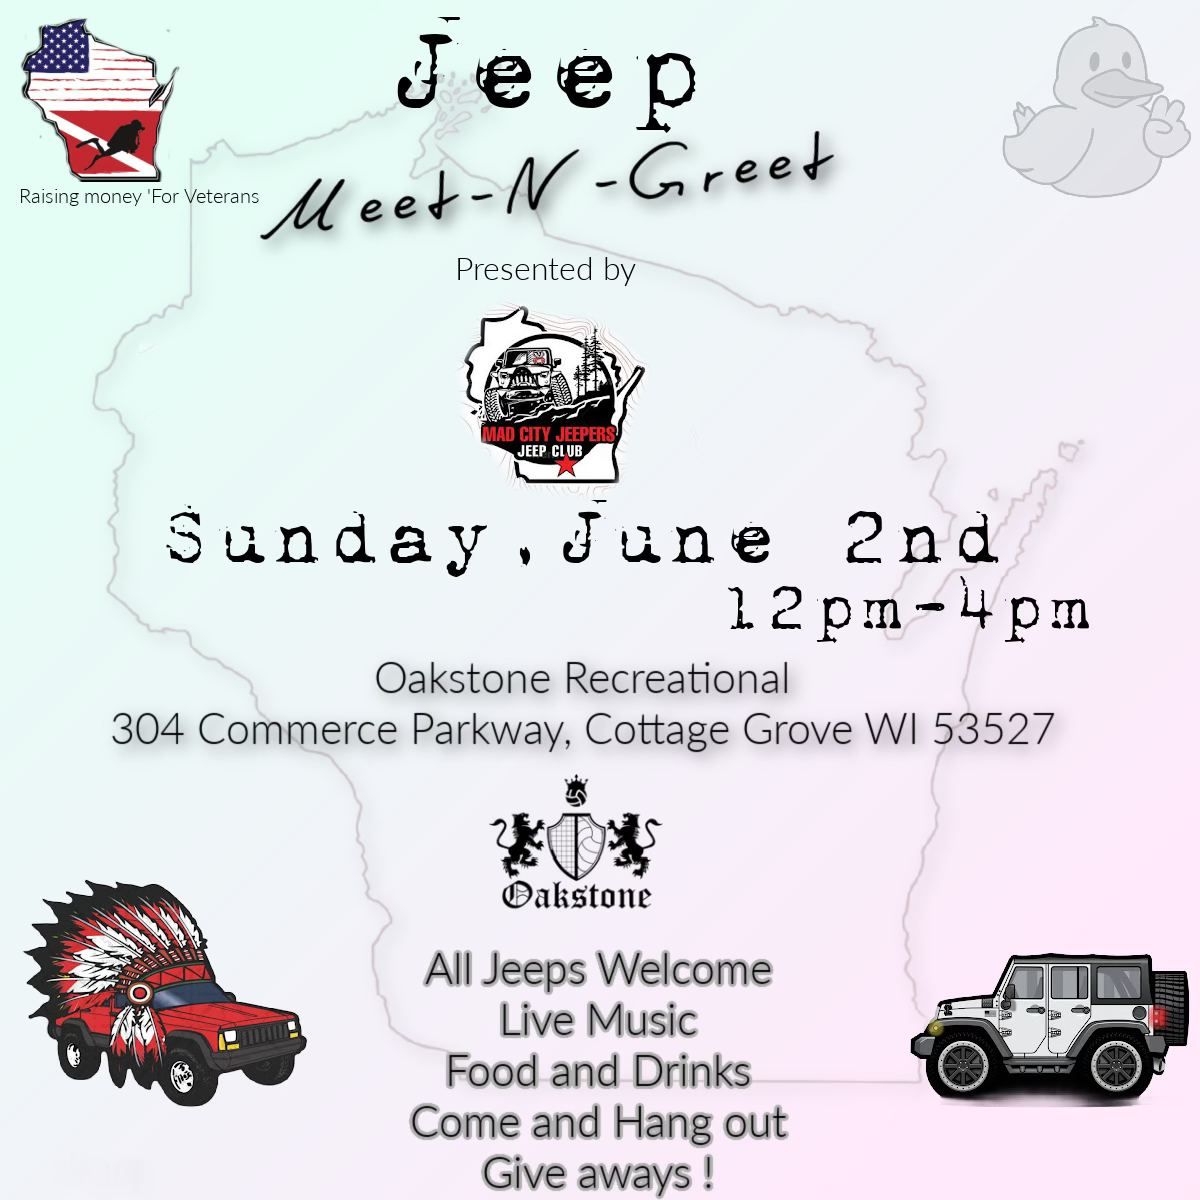 1st annual Jeep Meet-N-Greet